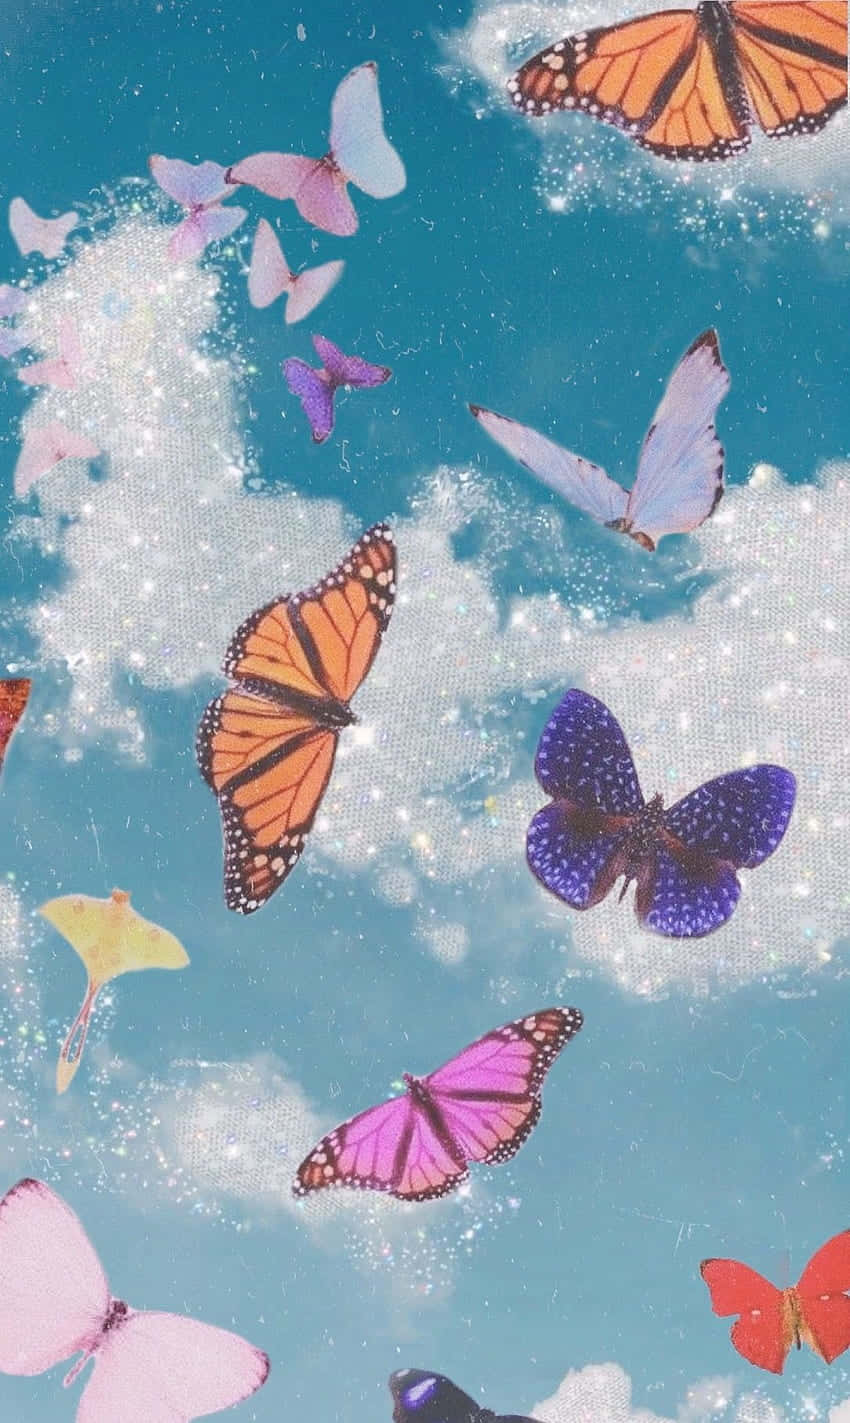 Einwunderschöner Schmetterling Mit Einem Komplexen Muster Aus Lila, Blau Und Weiß.